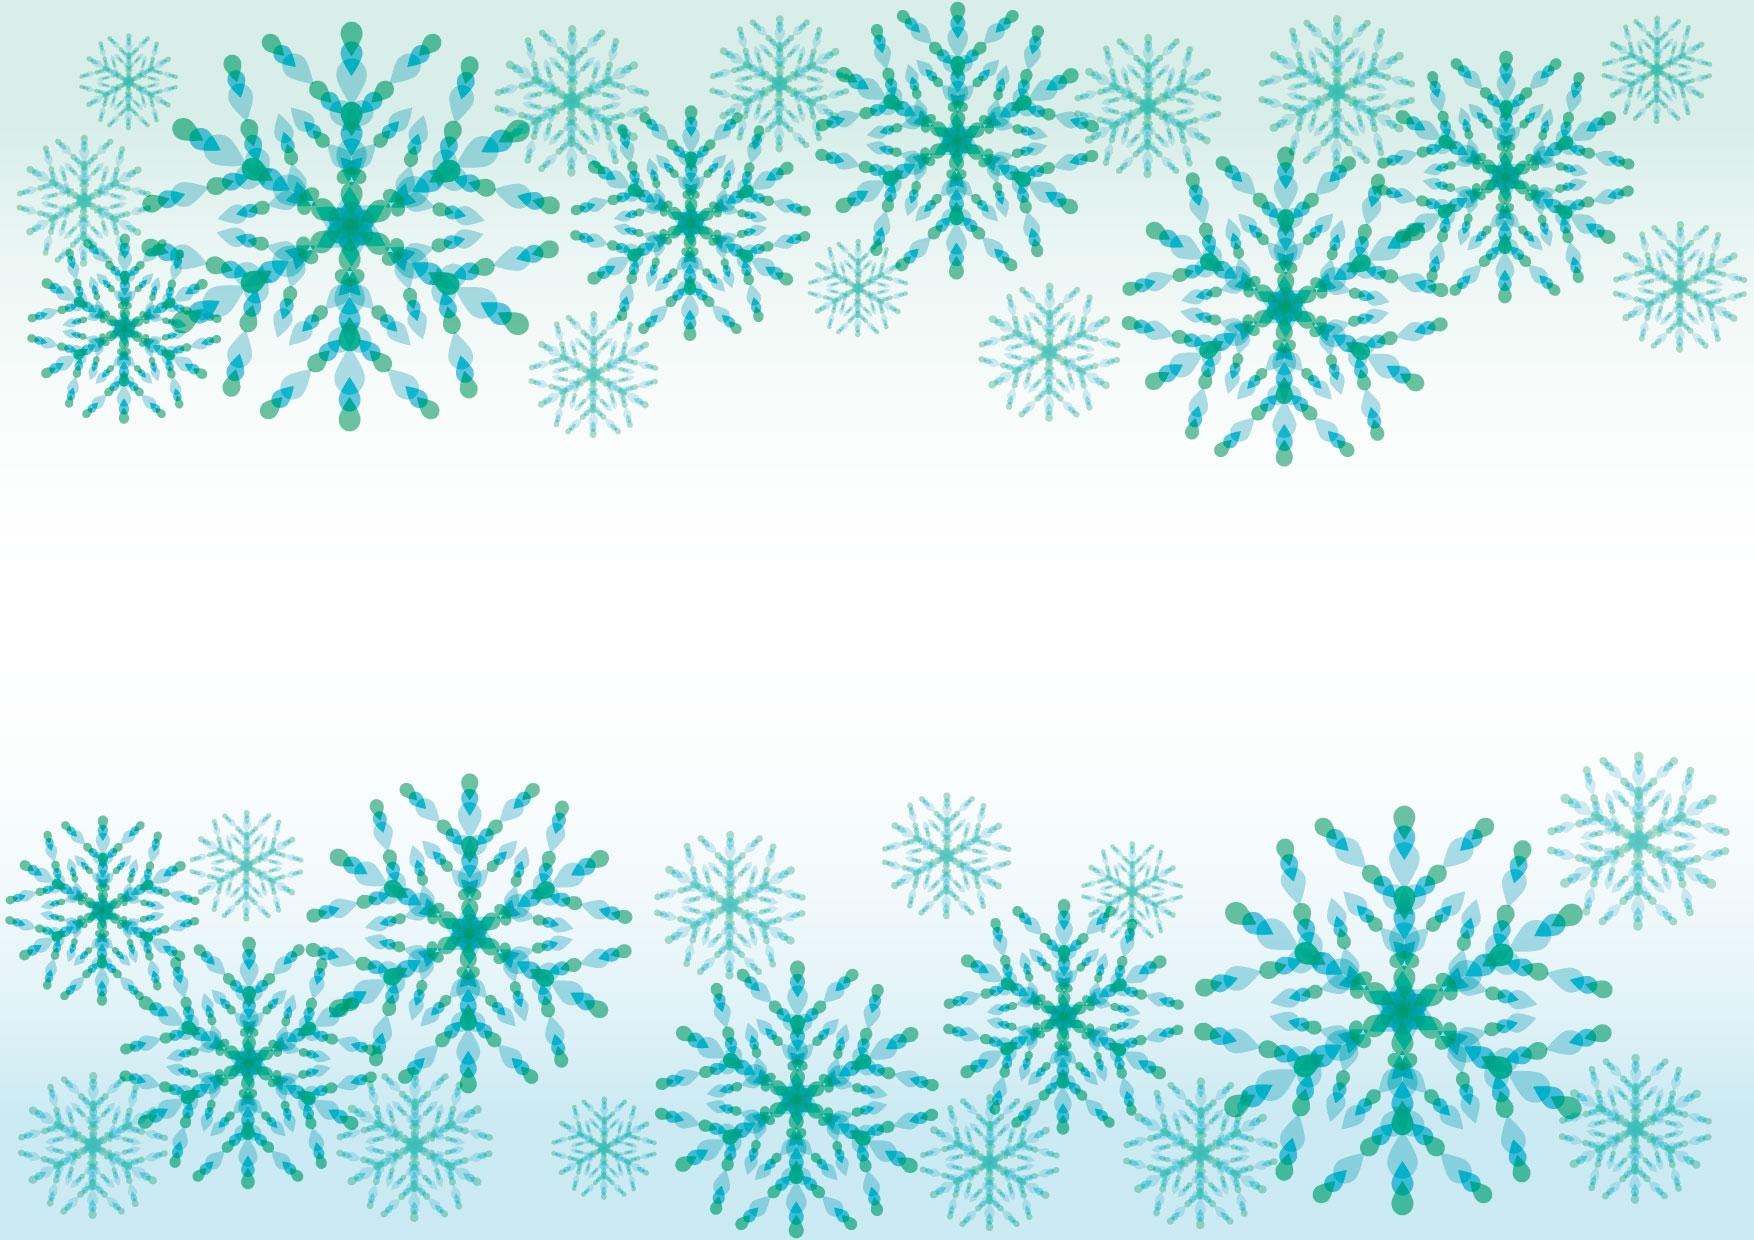 雪だるまと雪のライン 無料イラスト素材 素材ラボ